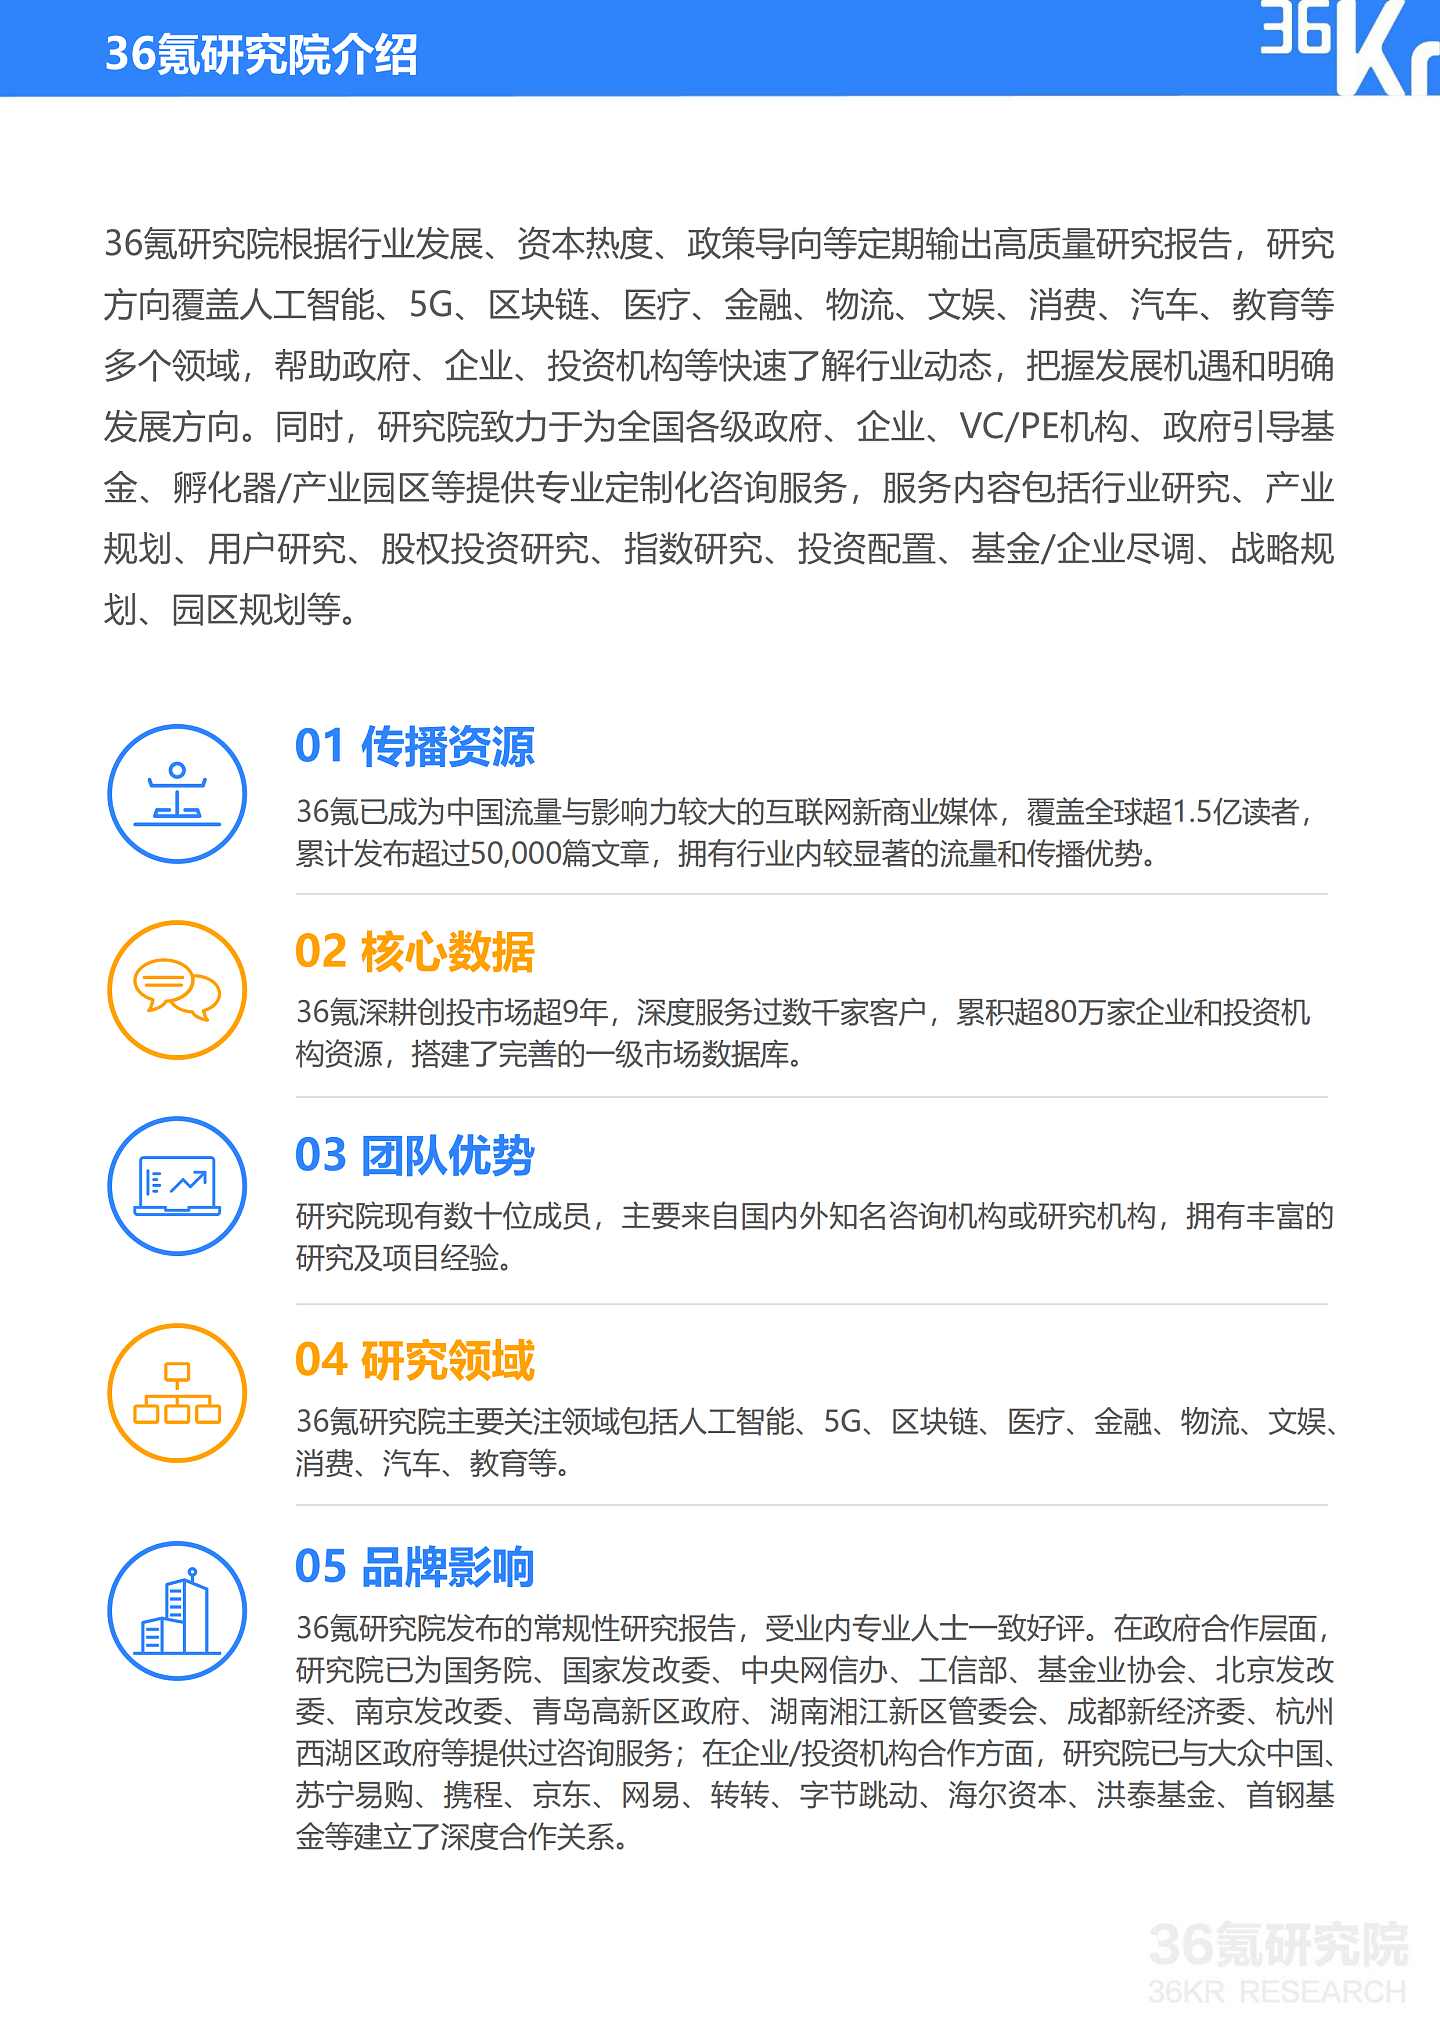 36氪研究院 | 2021年中国医疗AI行业研究报告 - 40